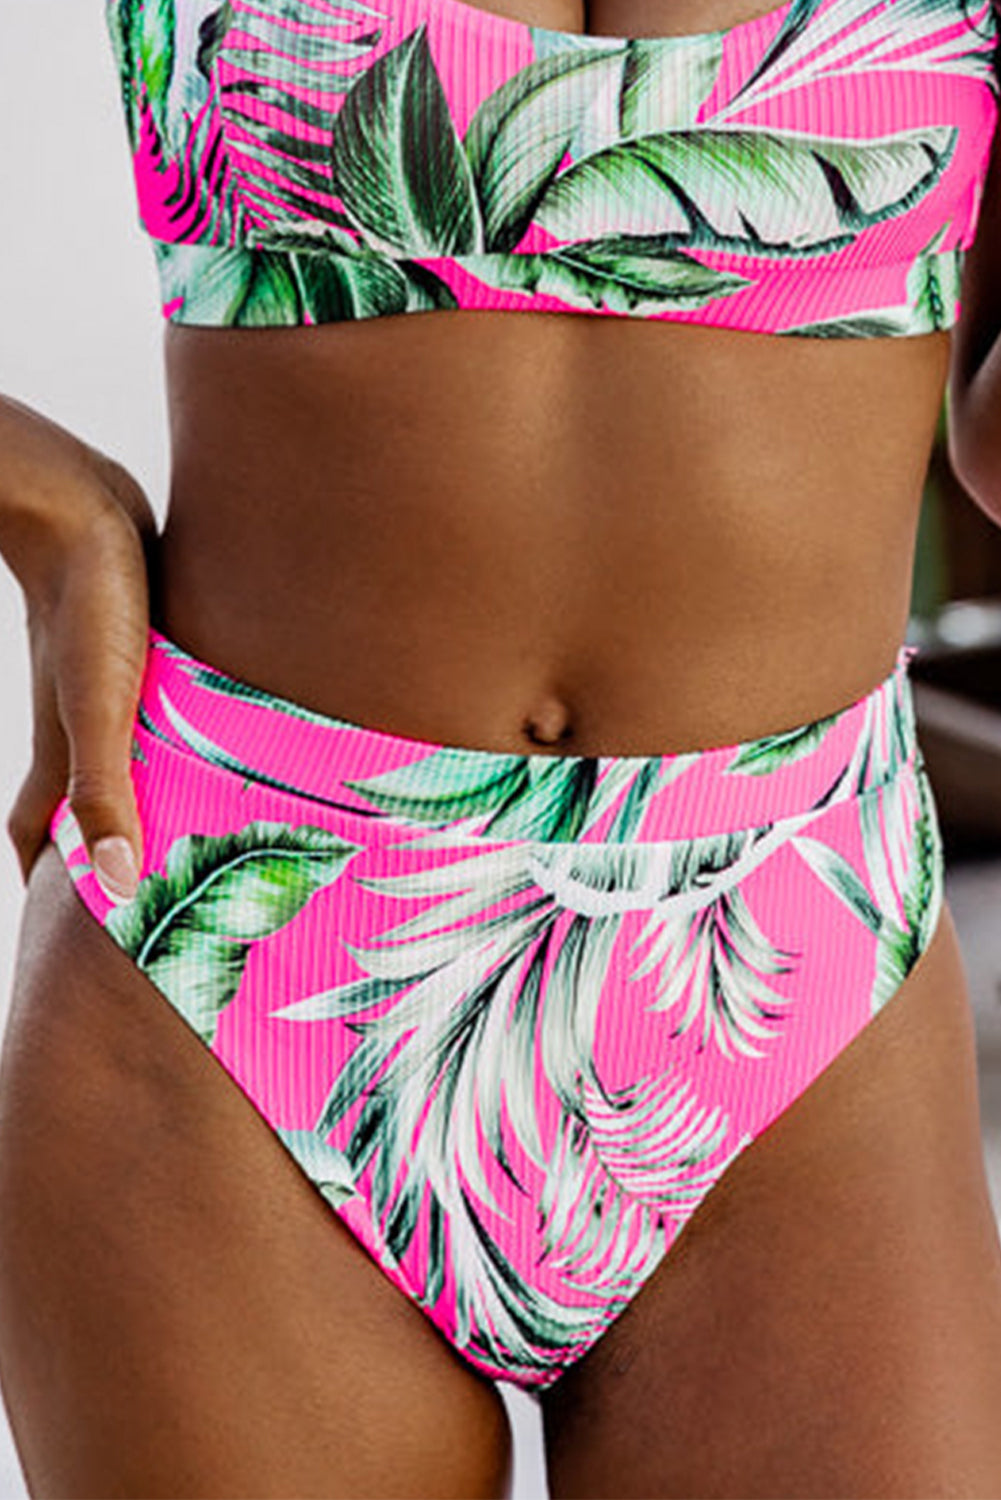 Bas de bikini texturé à imprimé tropical rose